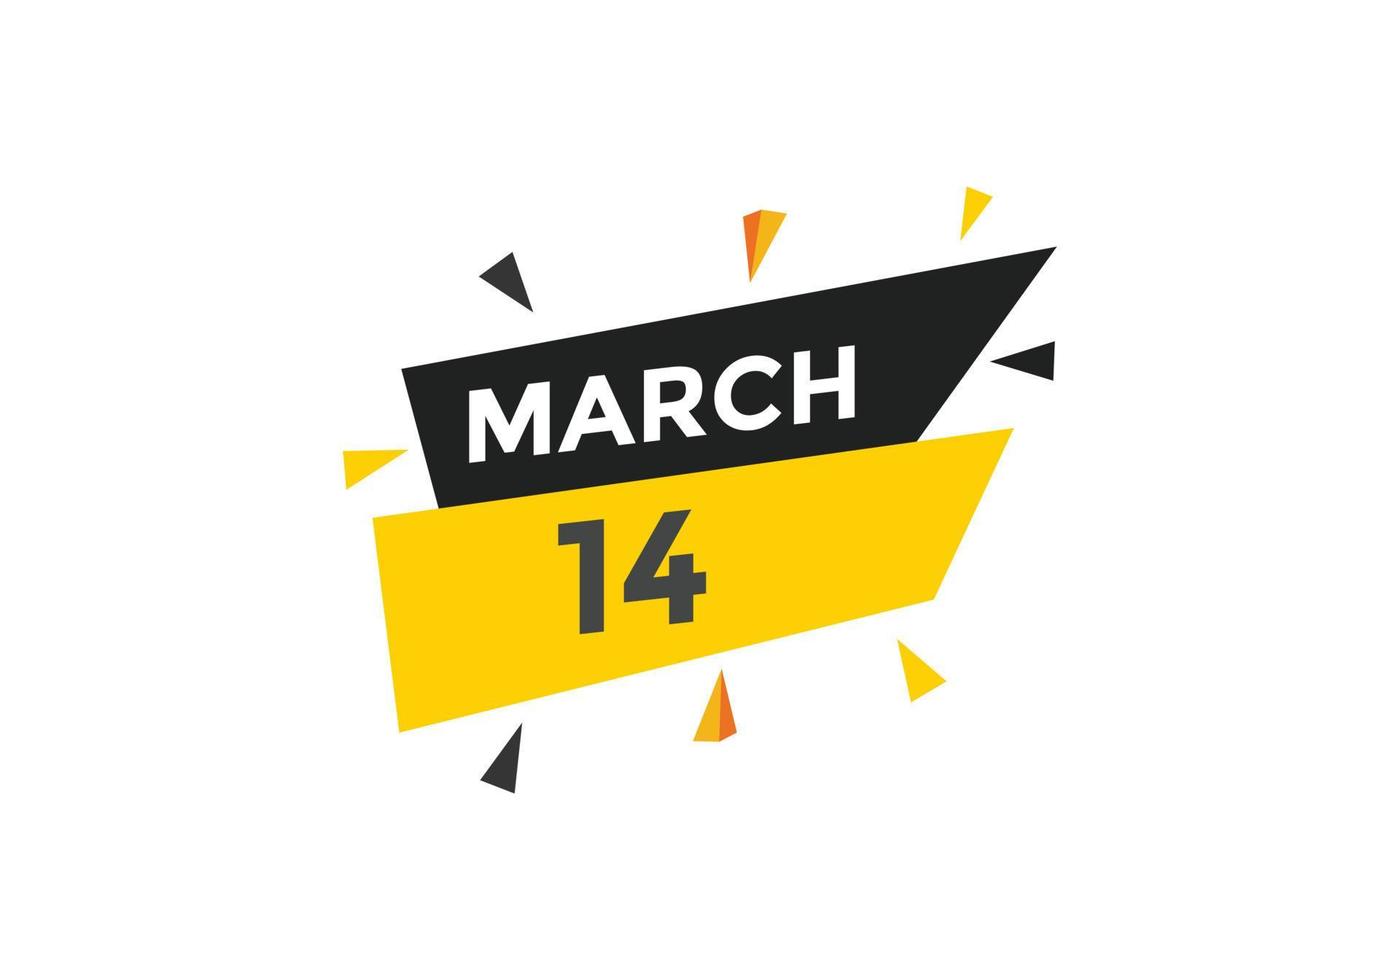 Recordatorio del calendario del 14 de marzo. Plantilla de icono de calendario diario del 14 de marzo. plantilla de diseño de icono de calendario 14 de marzo. ilustración vectorial vector